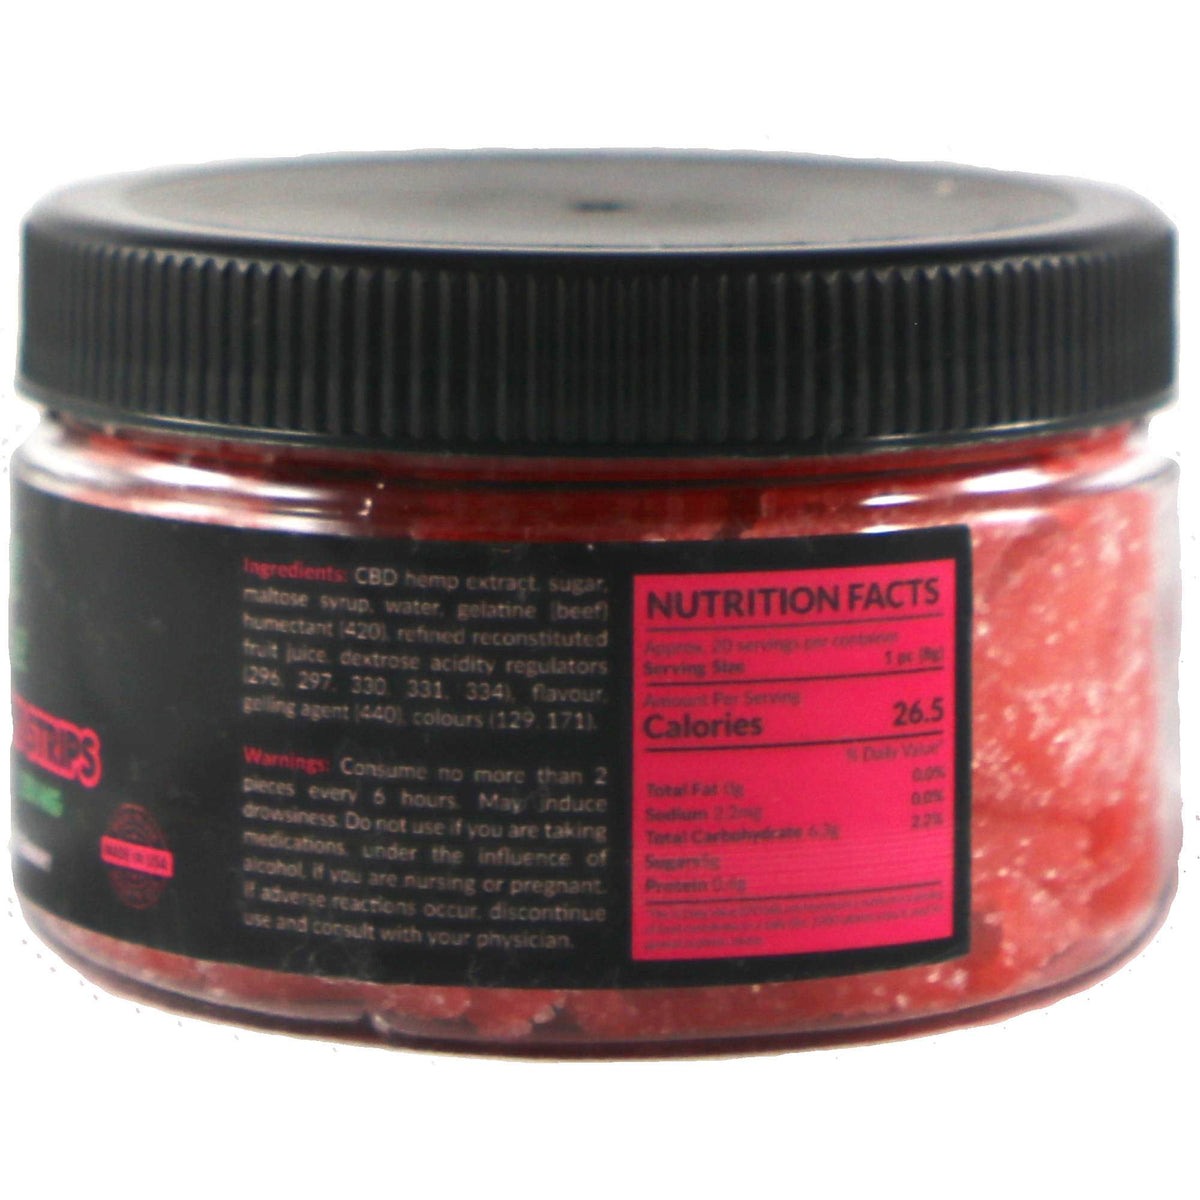 Strawberry Strips PremeZ CBD Gummies Jars